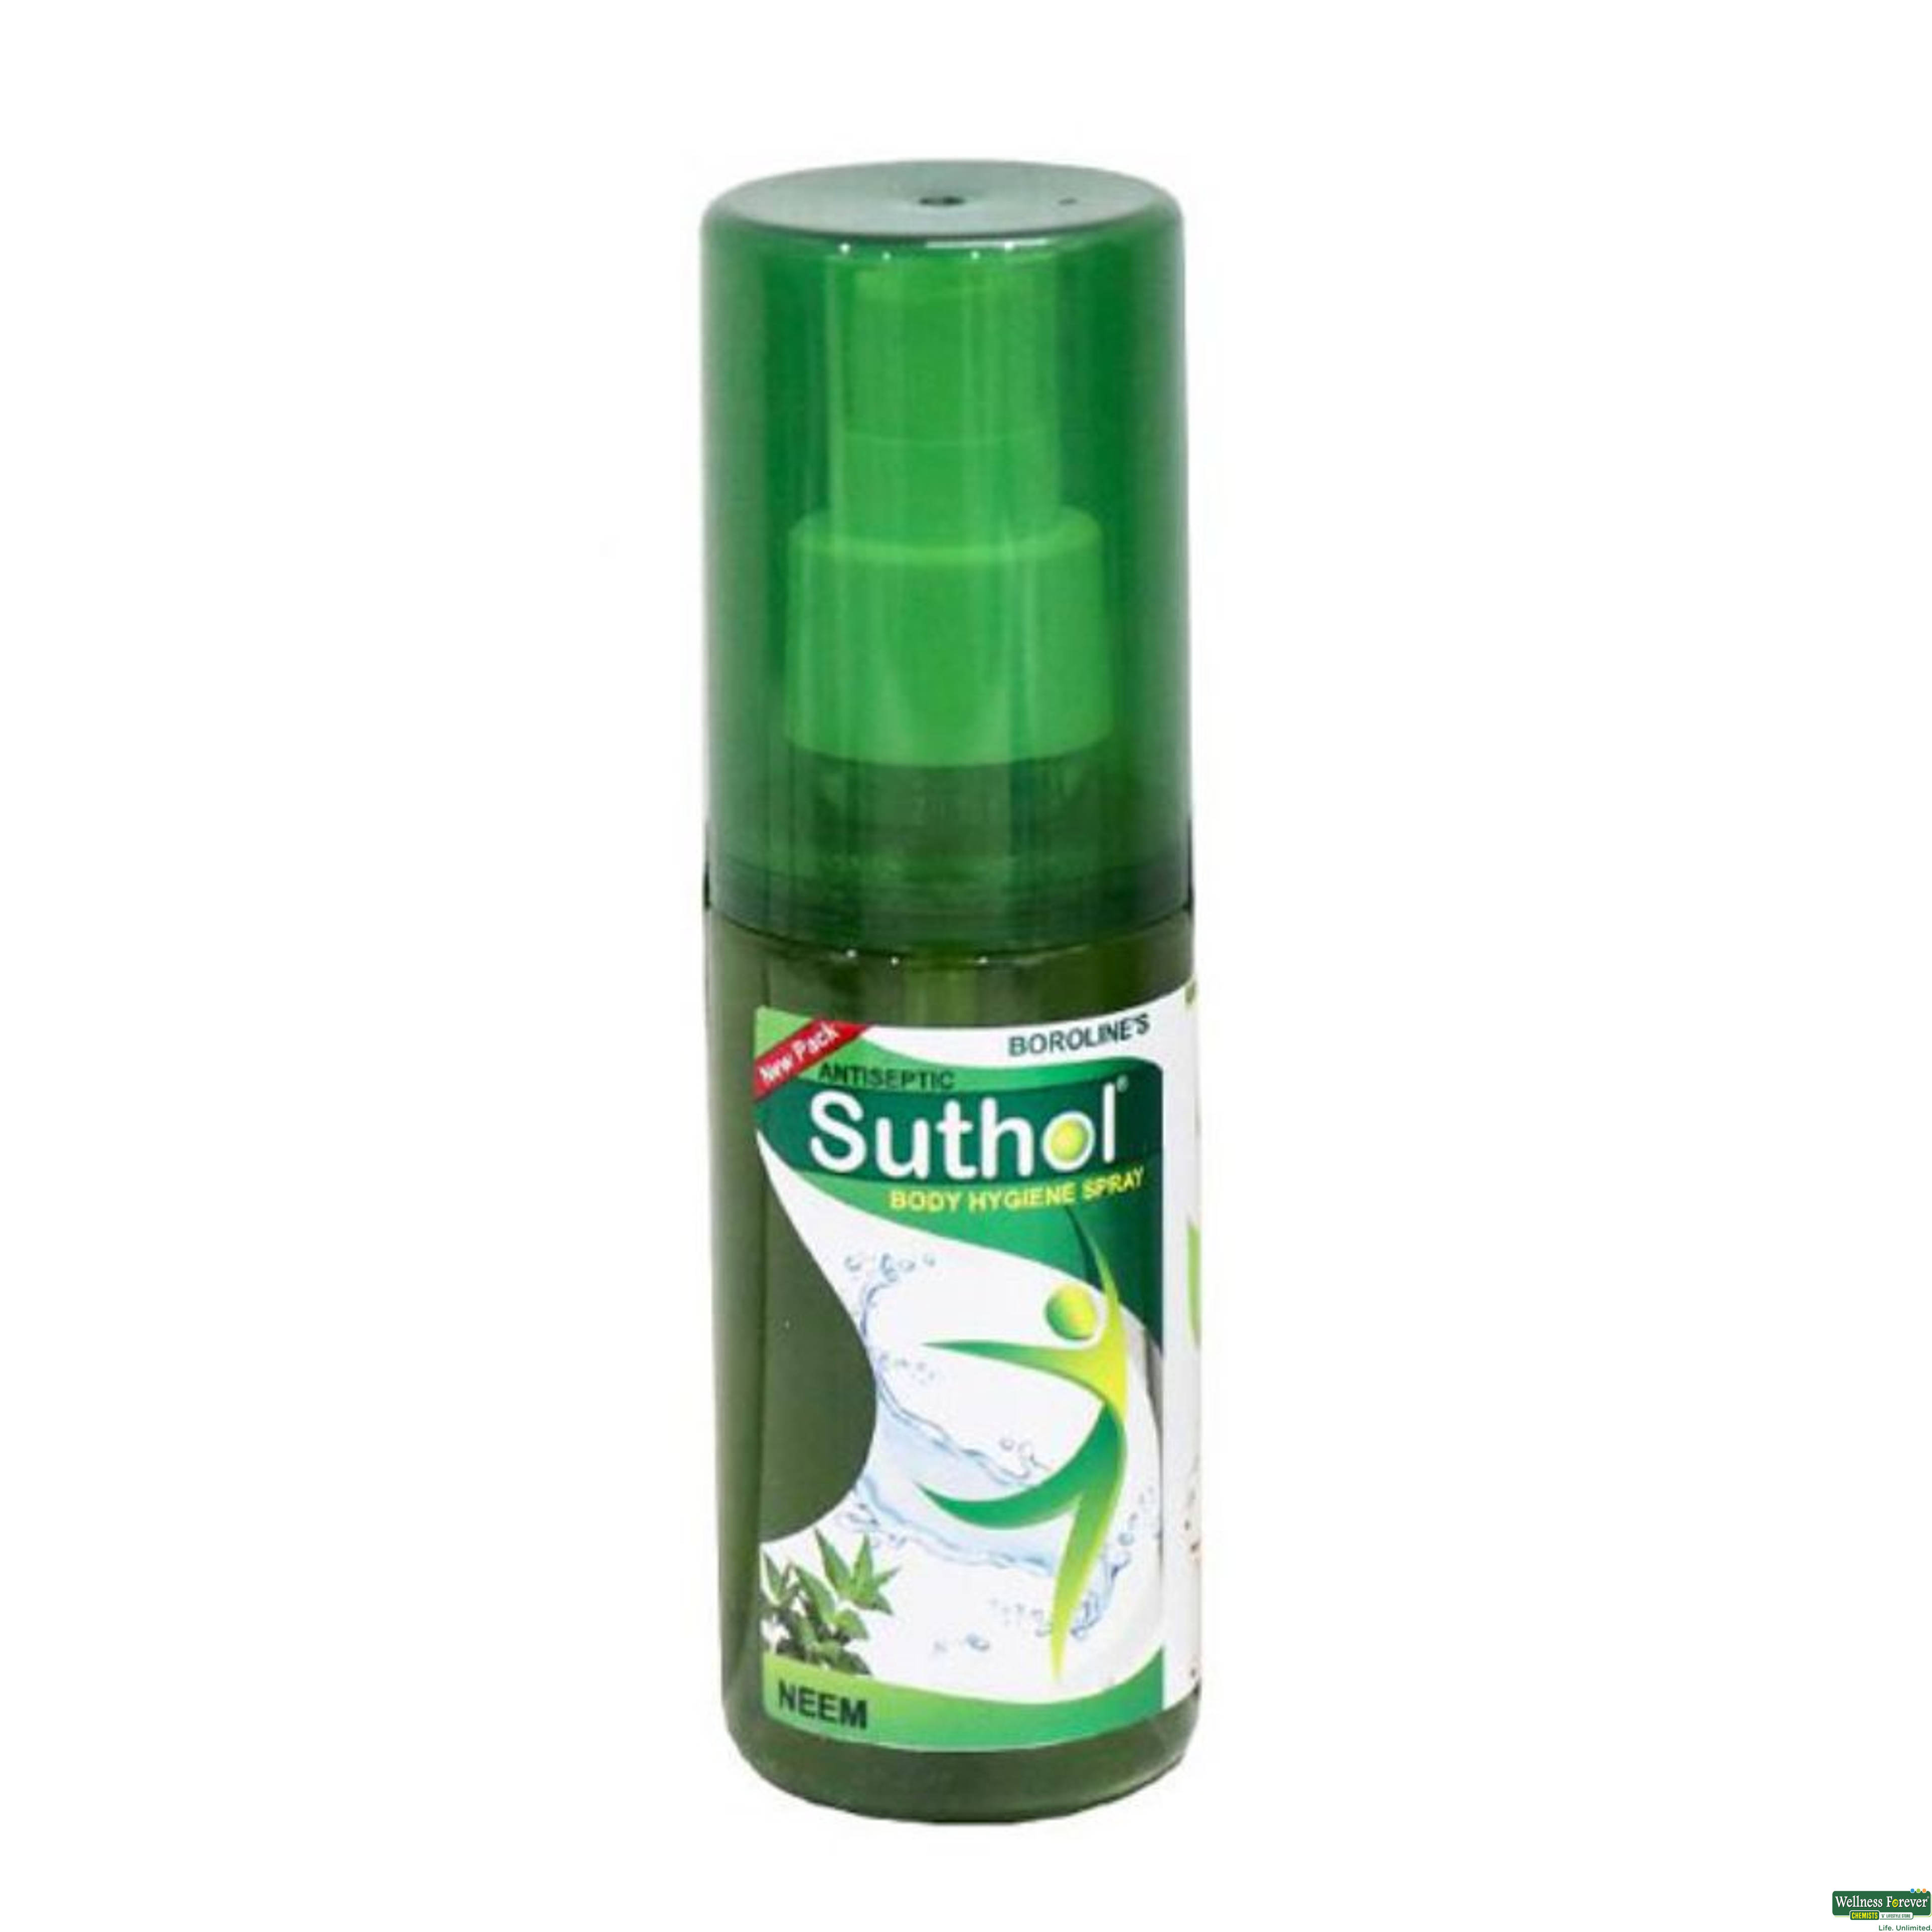 Suthol Antiseptic Spray, 100 ml-image